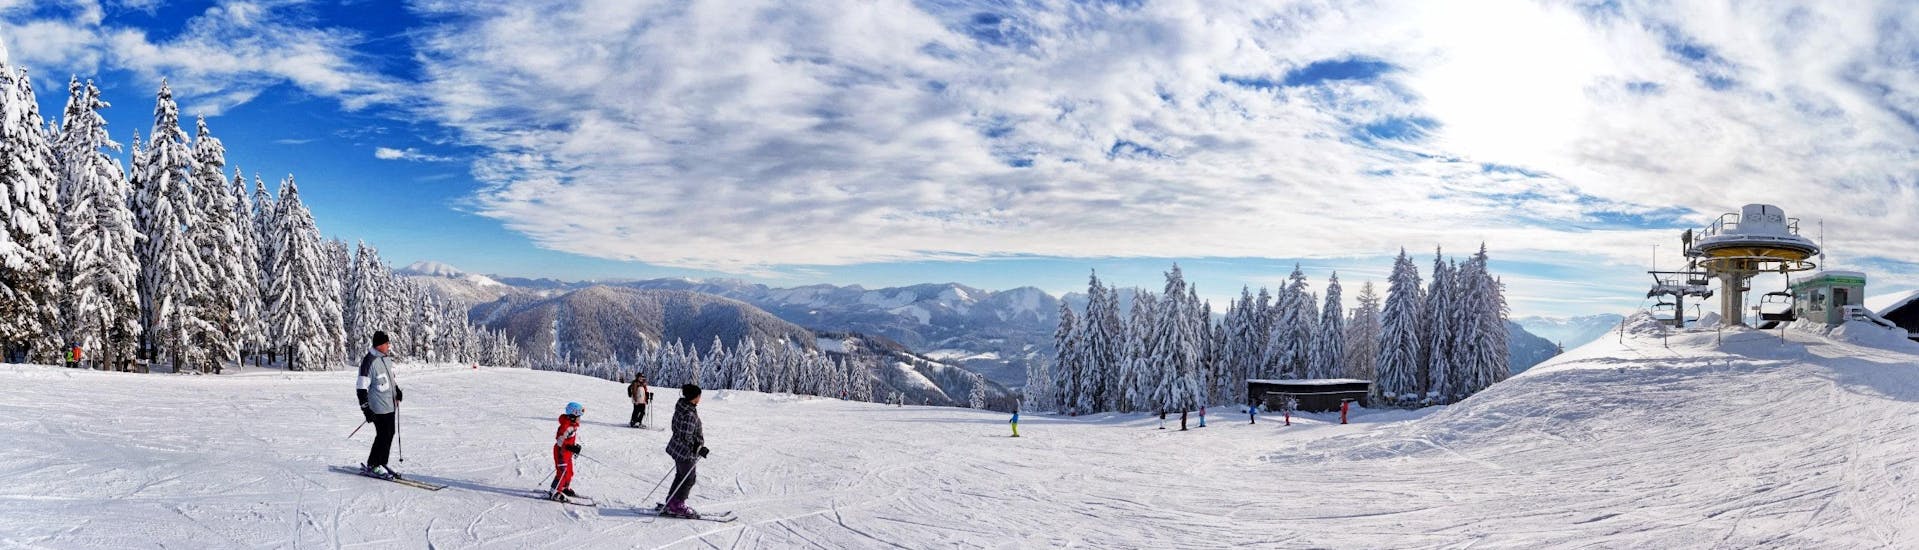 Ausblick auf die sonnige Berglandschaft beim Skifahren lernen mit den Skischulen im Skigebiet Mariazell - Bürgeralpe.